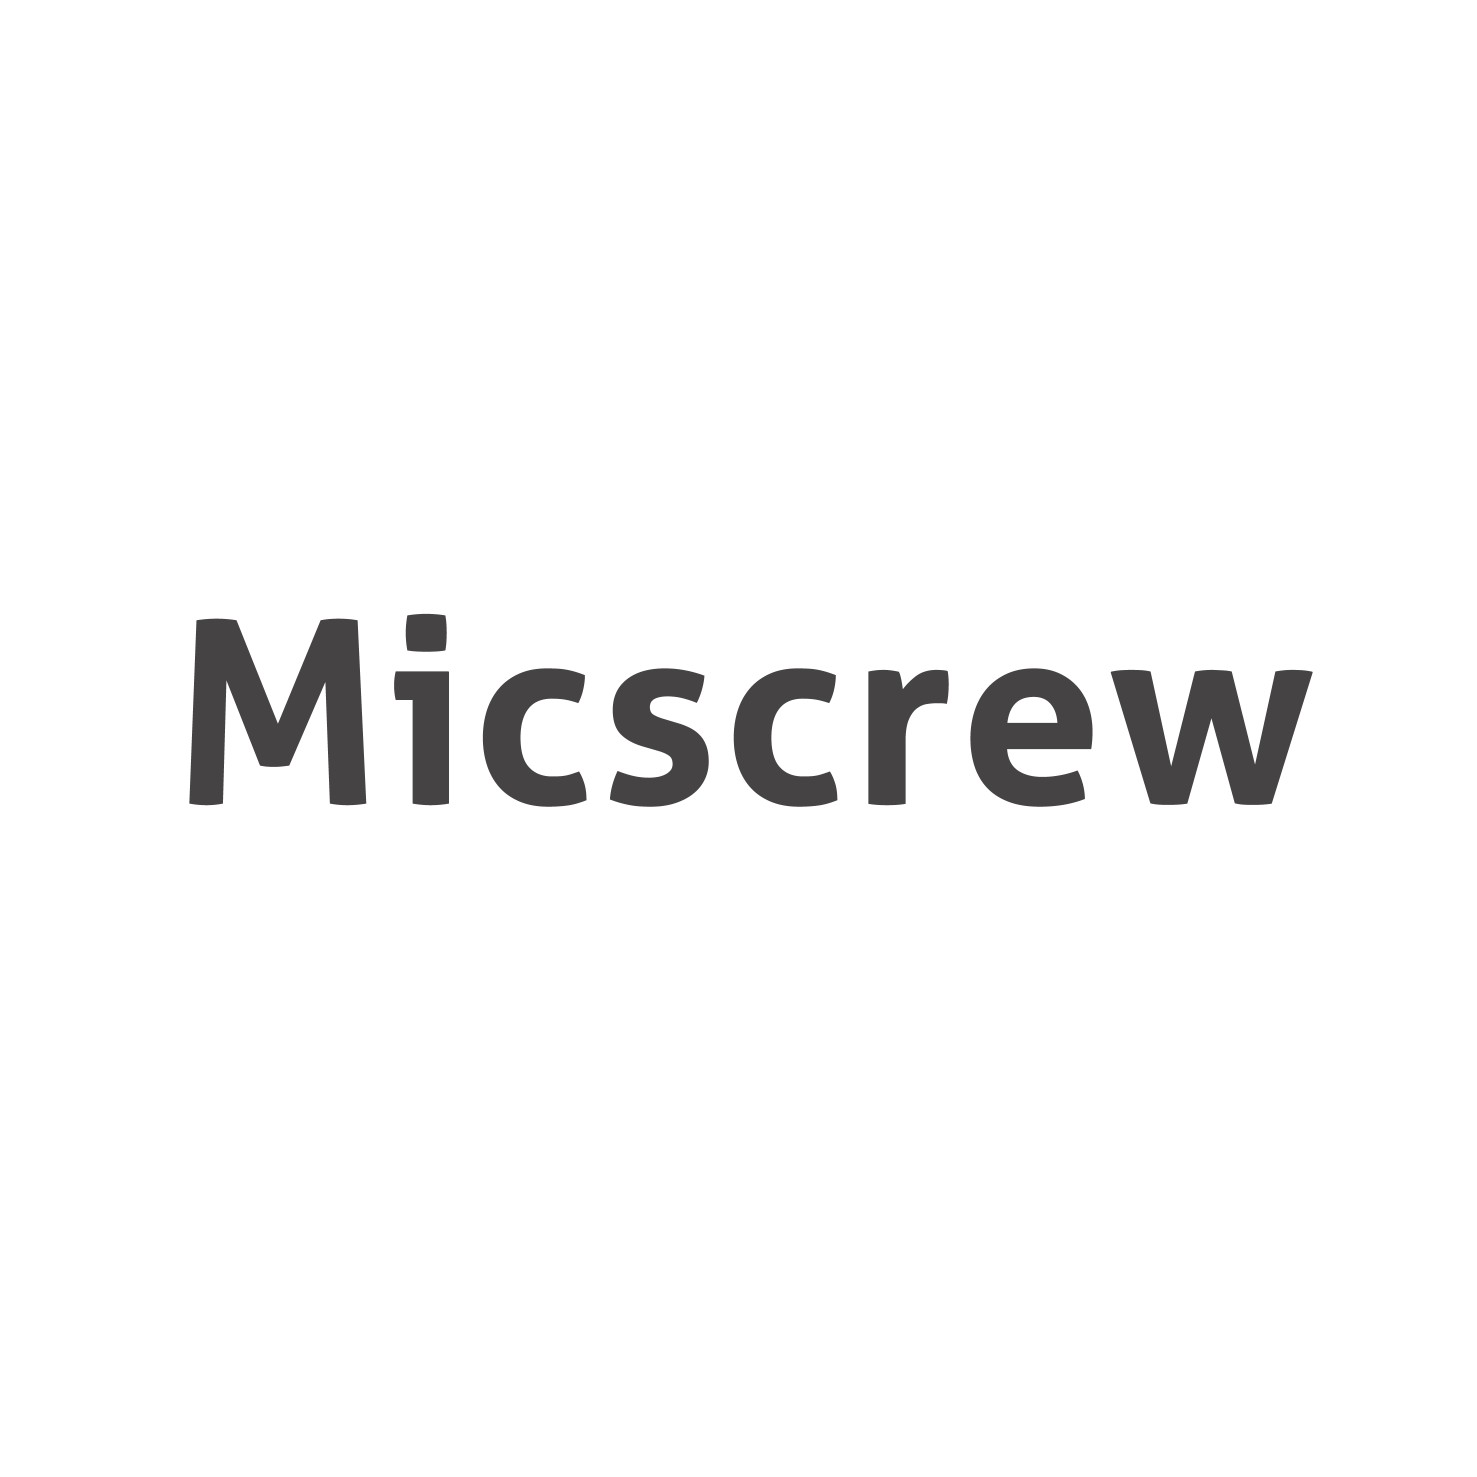 Micscrew